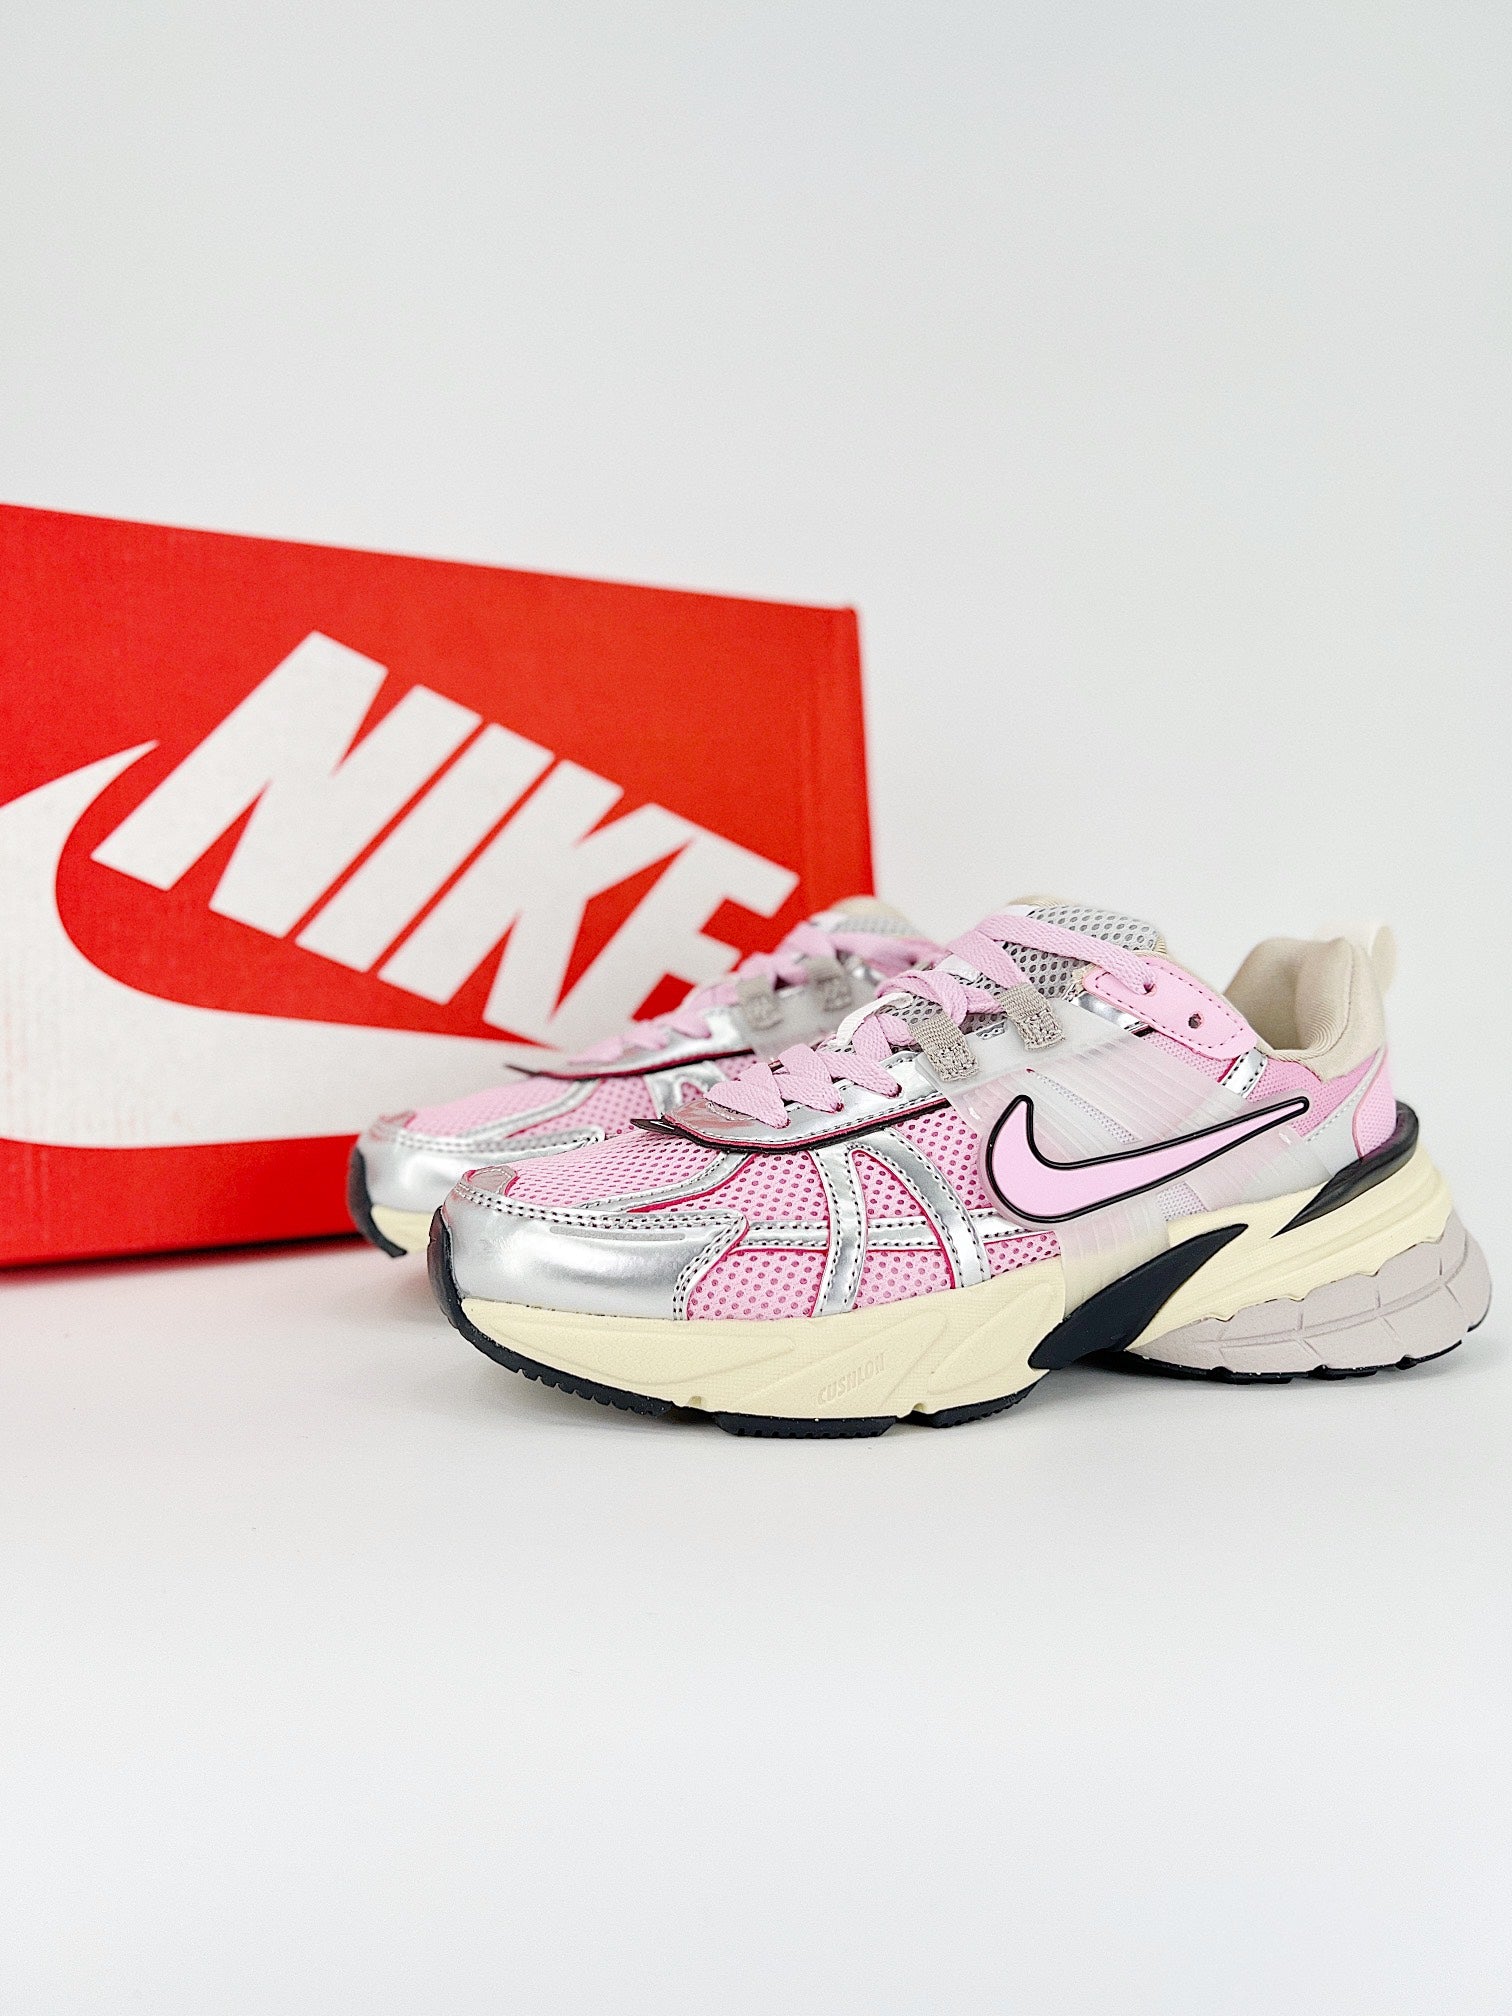 Nike V2k run light pink